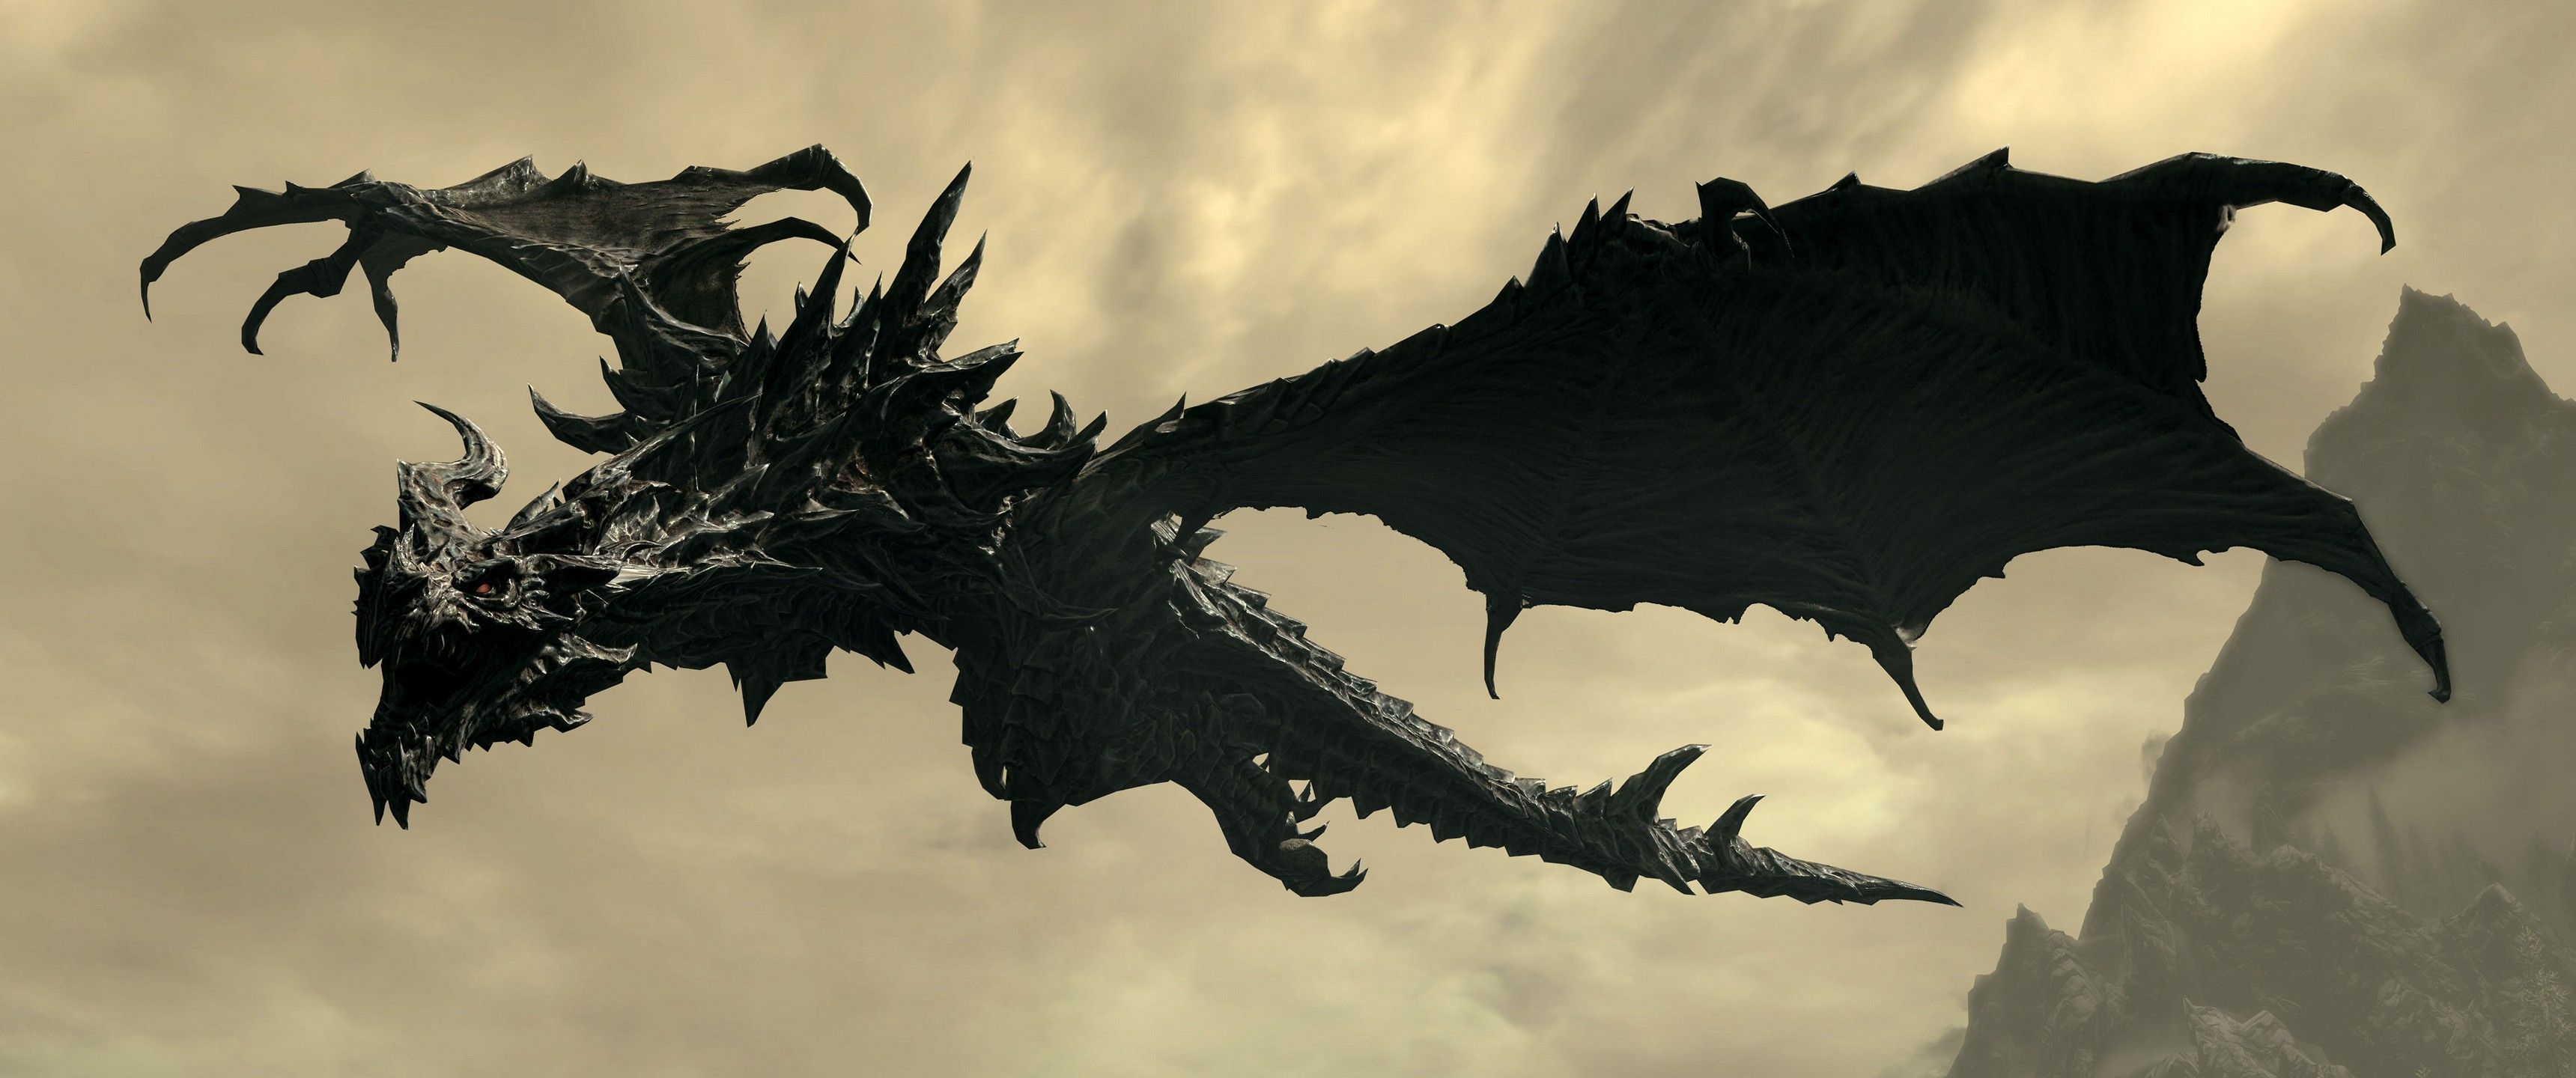 A black dragon soars through the sky in Elder Scrolls V: Skyrim. - 3440x1440